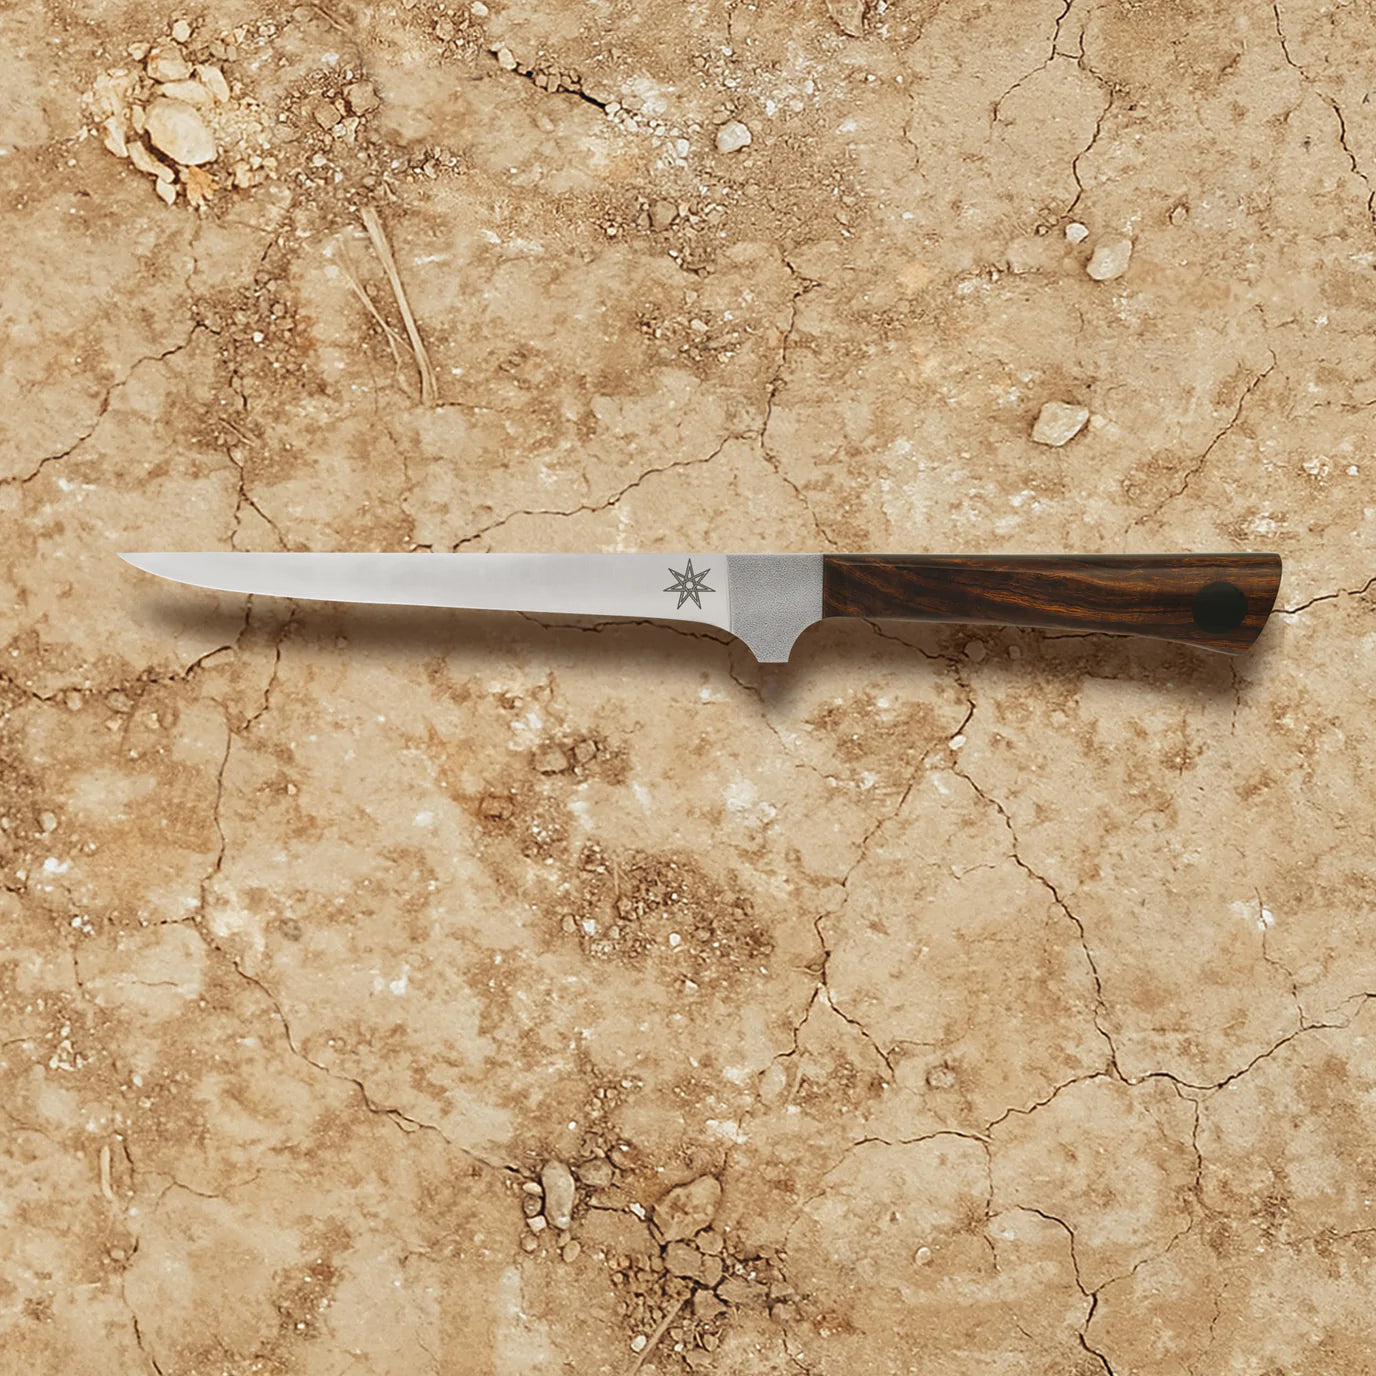 Olneya Straight Boning Knife, 6 inches